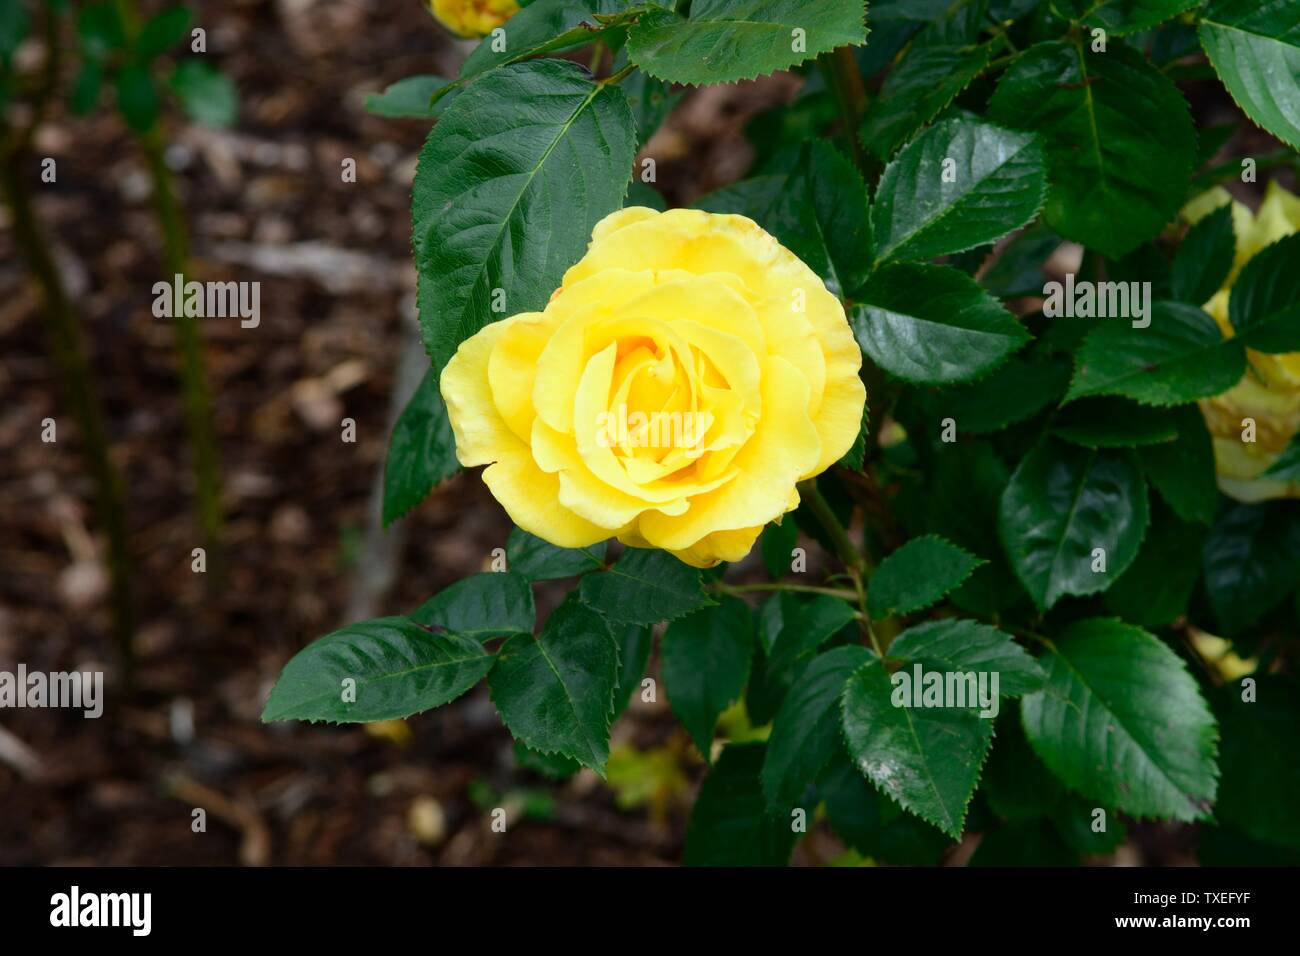 Rosa Lichtkonigin Lucia répéter la floraison rose jaune Banque D'Images